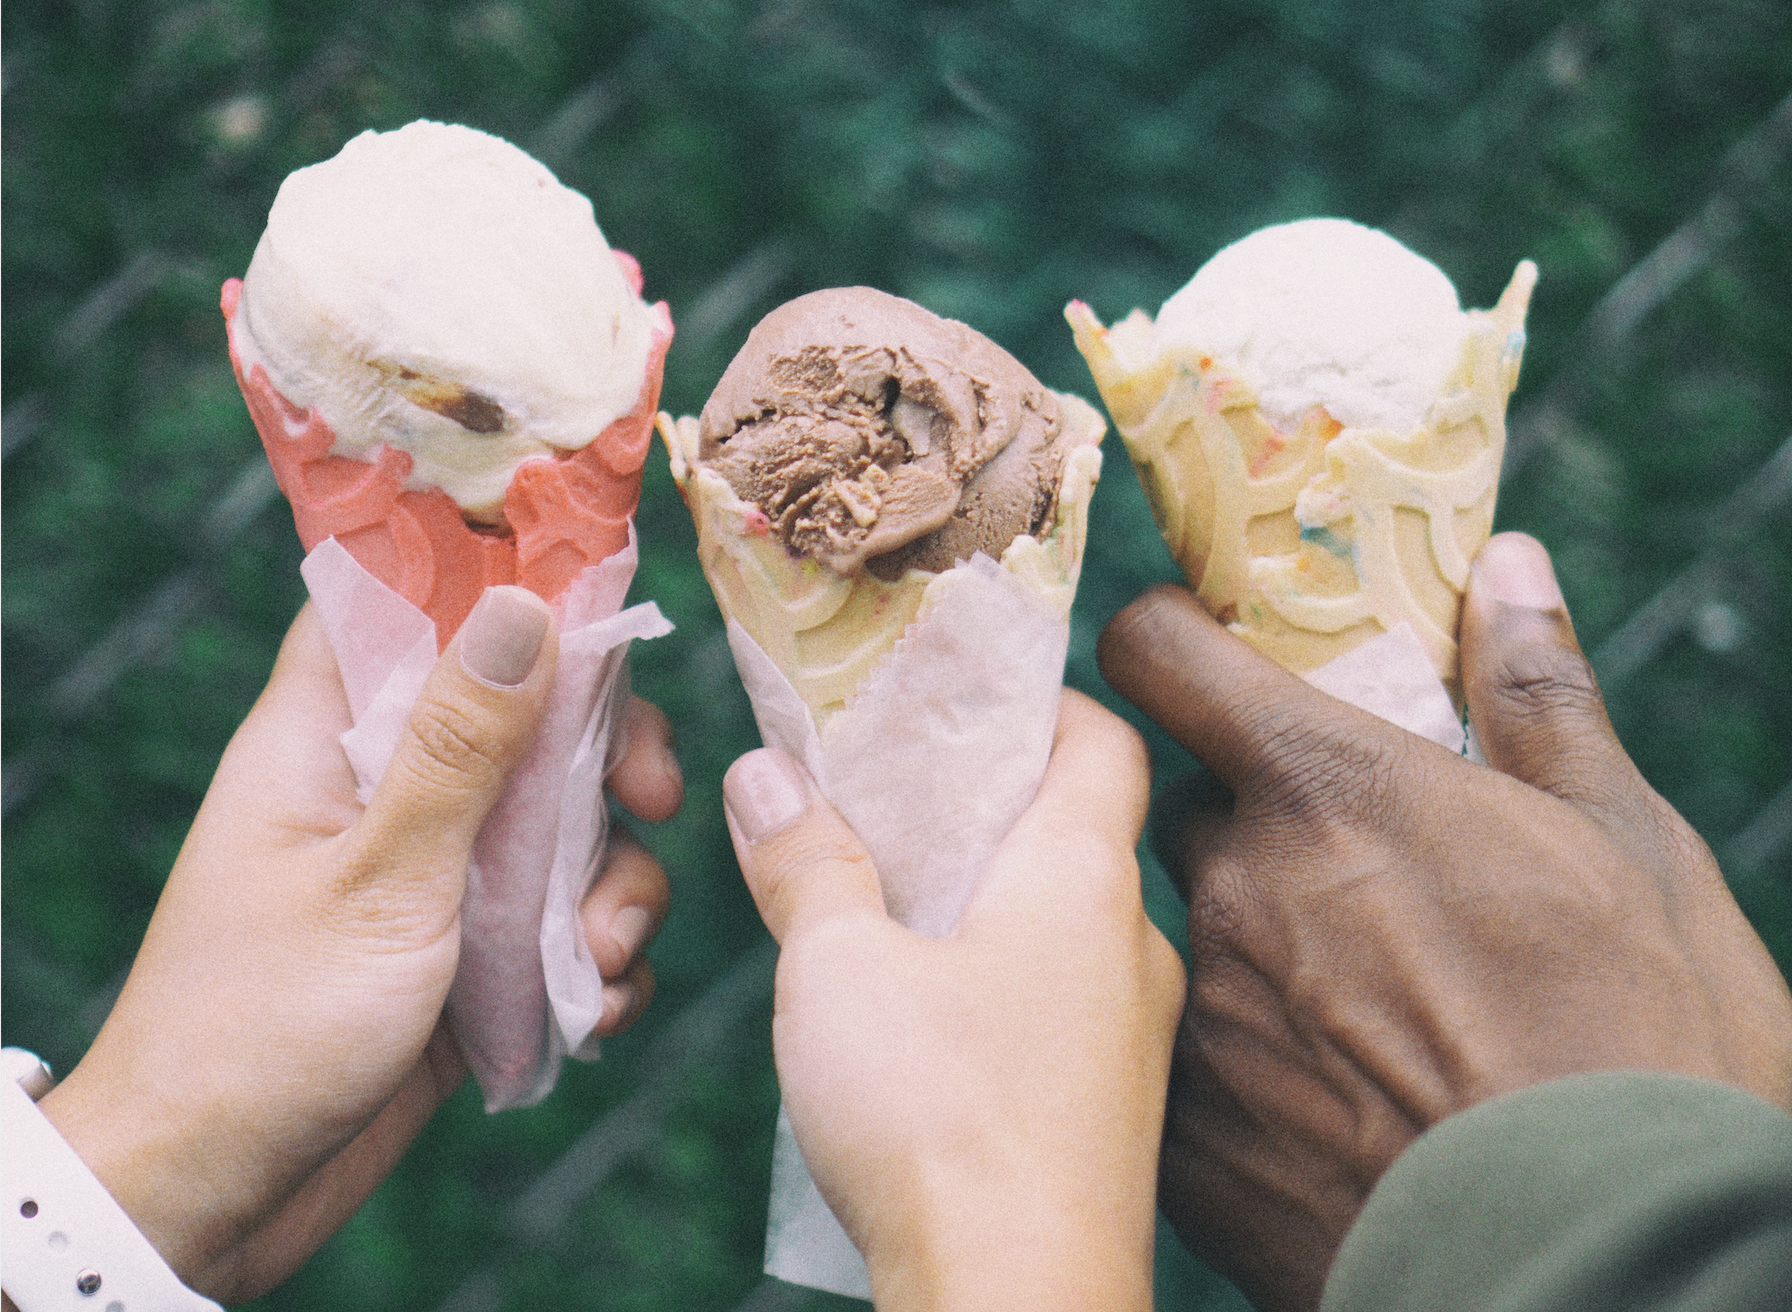 Three friends holding ice cream cones